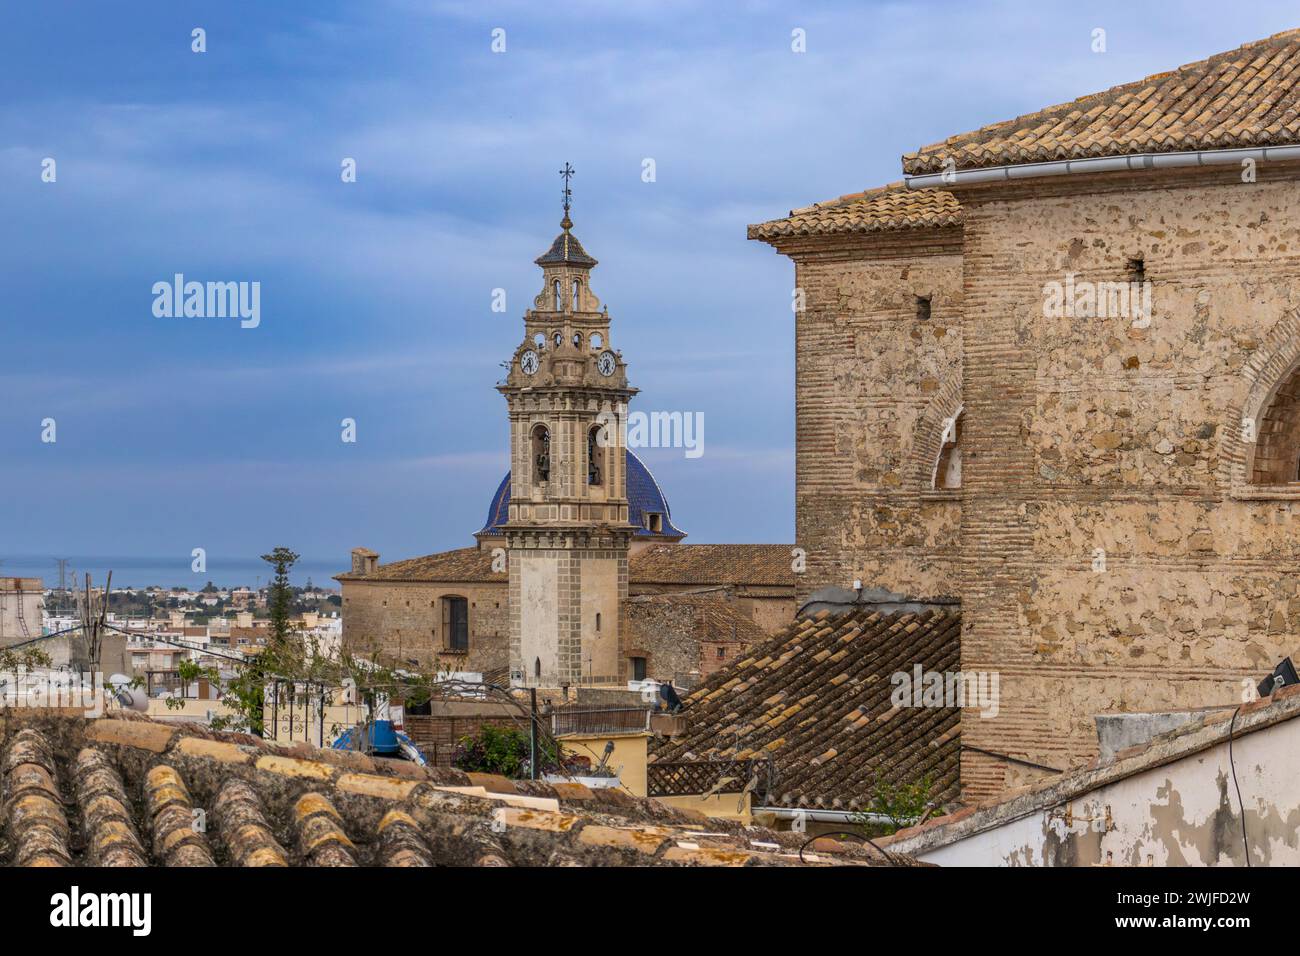 Vue panoramique de l'église San Roque, Oliva, Valence, Espagne Banque D'Images